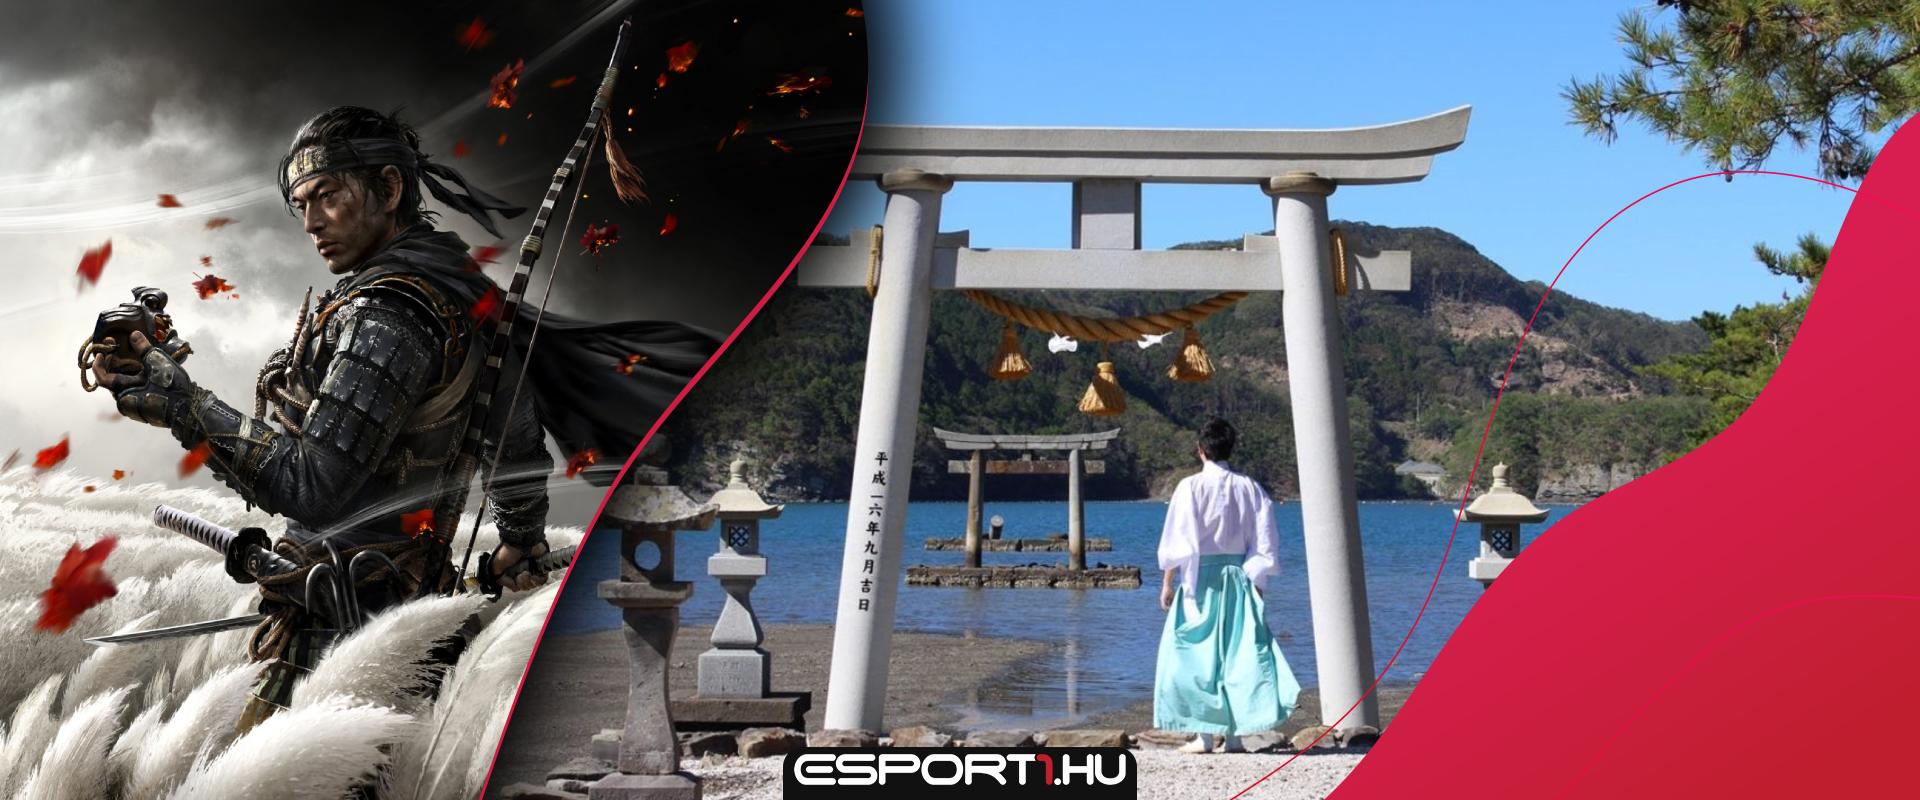 A Ghost of Tsushima játékosai is beszálltak a sziget szentélyének megsegítésébe